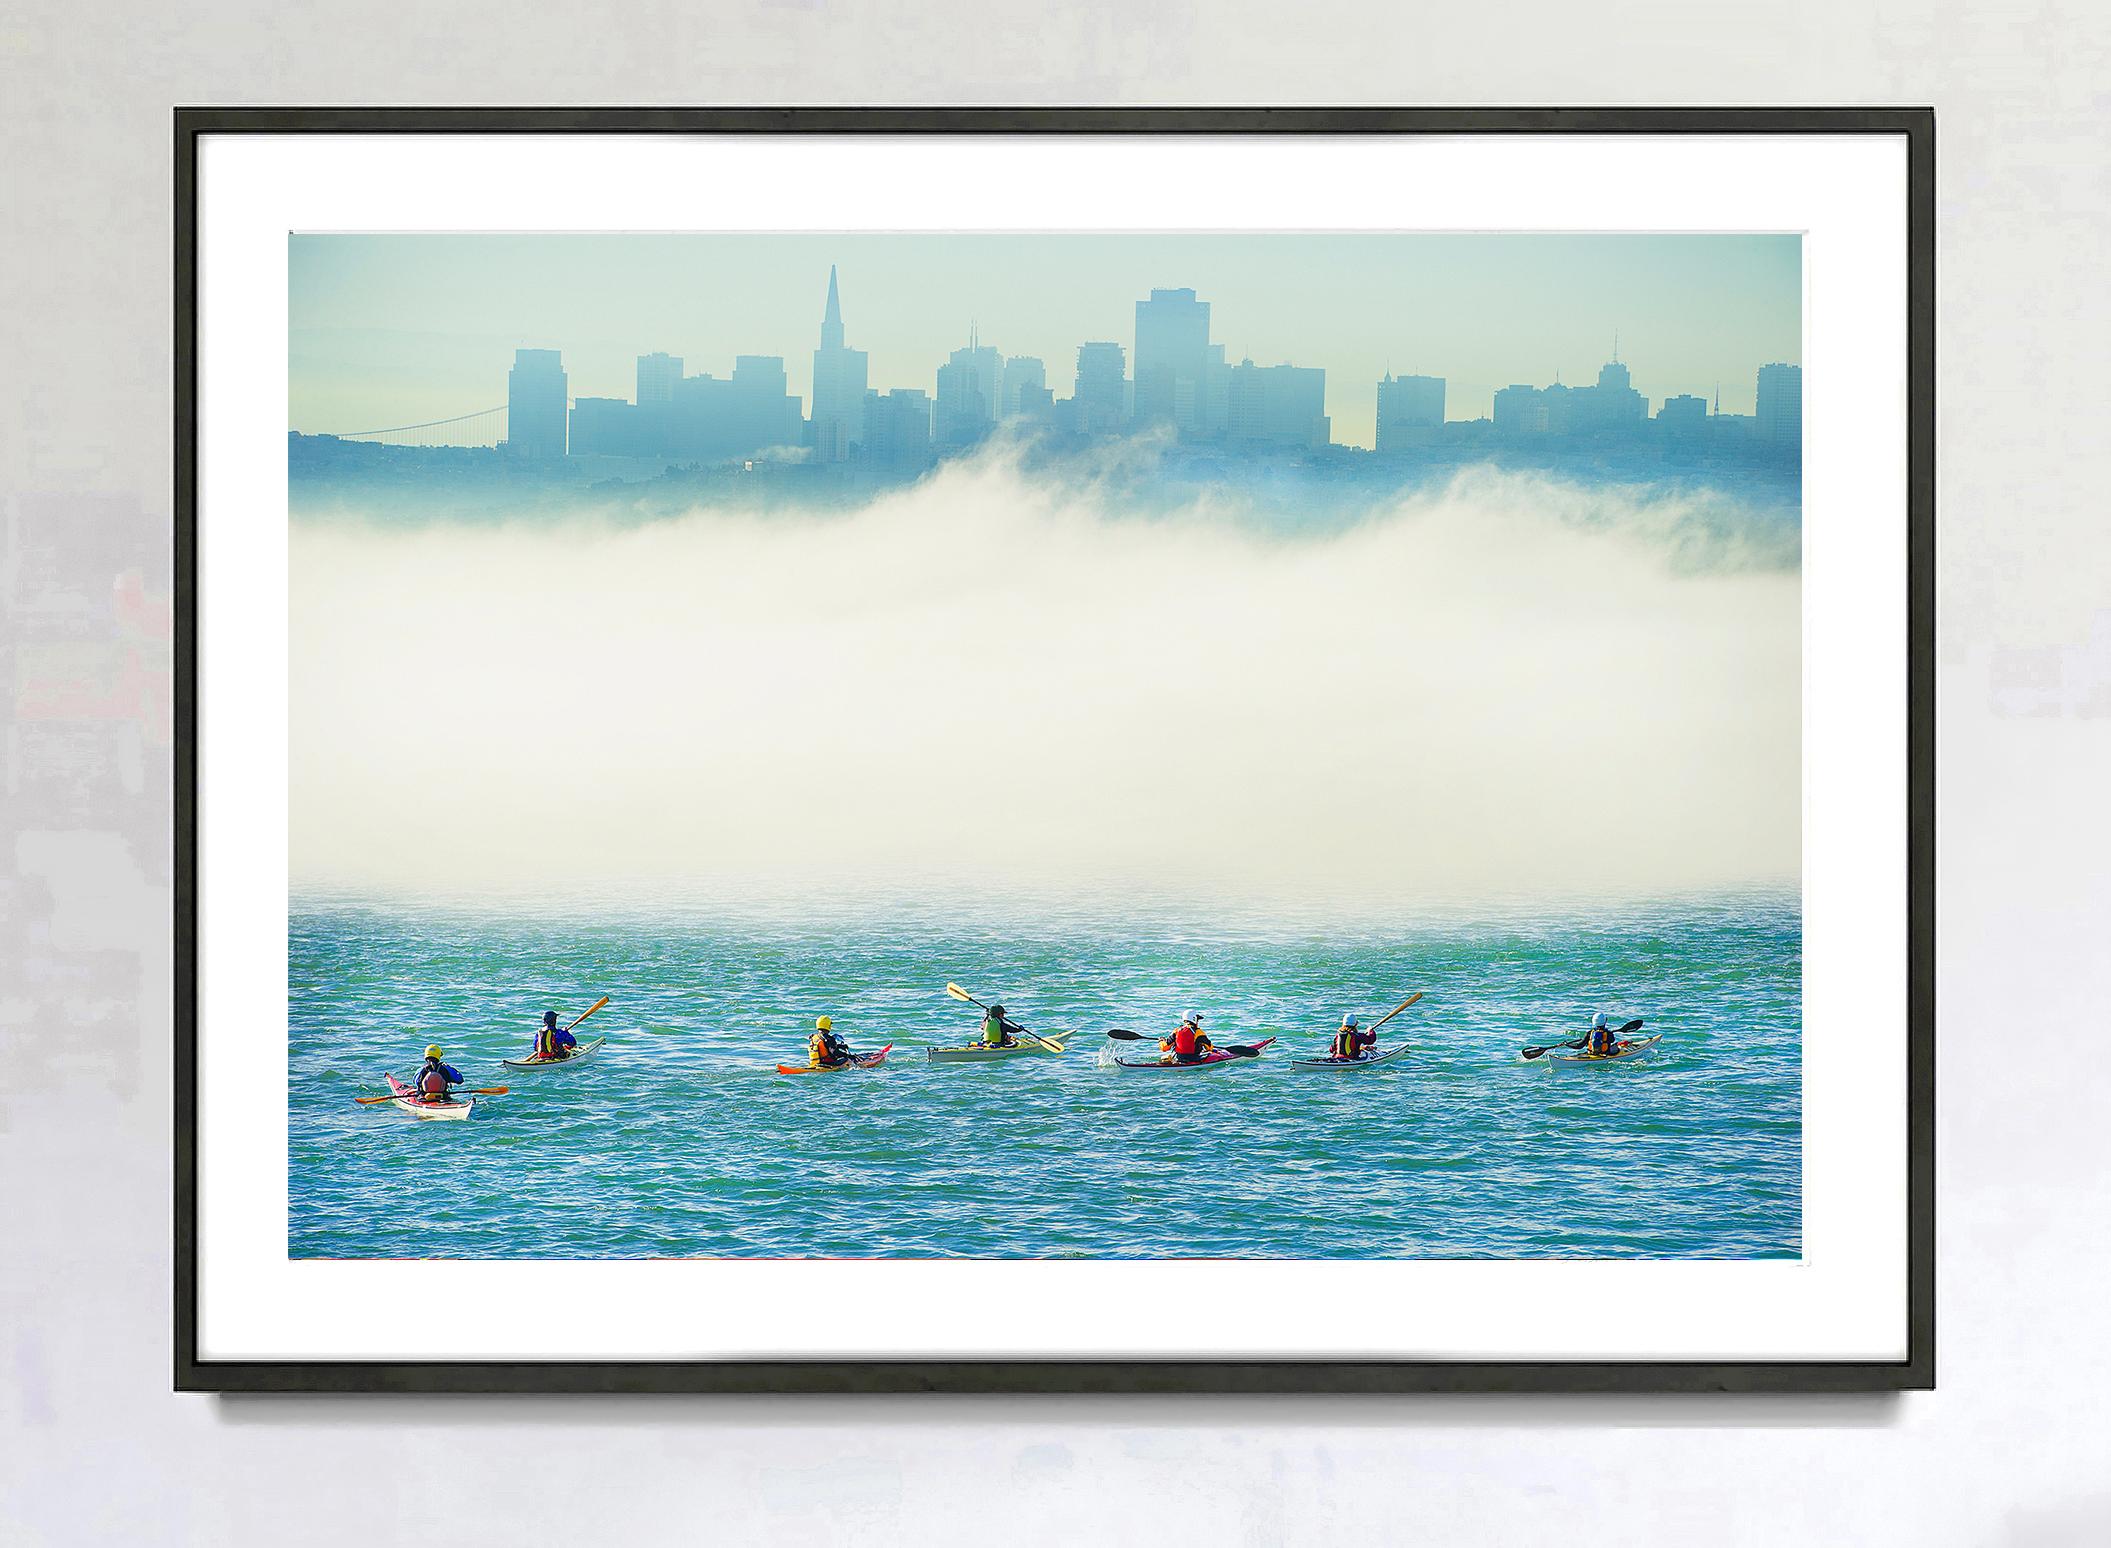 Fête surréaliste en kayak dans la baie de San Francisco, brumeuse et métaphysique, à l'horizon assombri - Photograph de Mitchell Funk